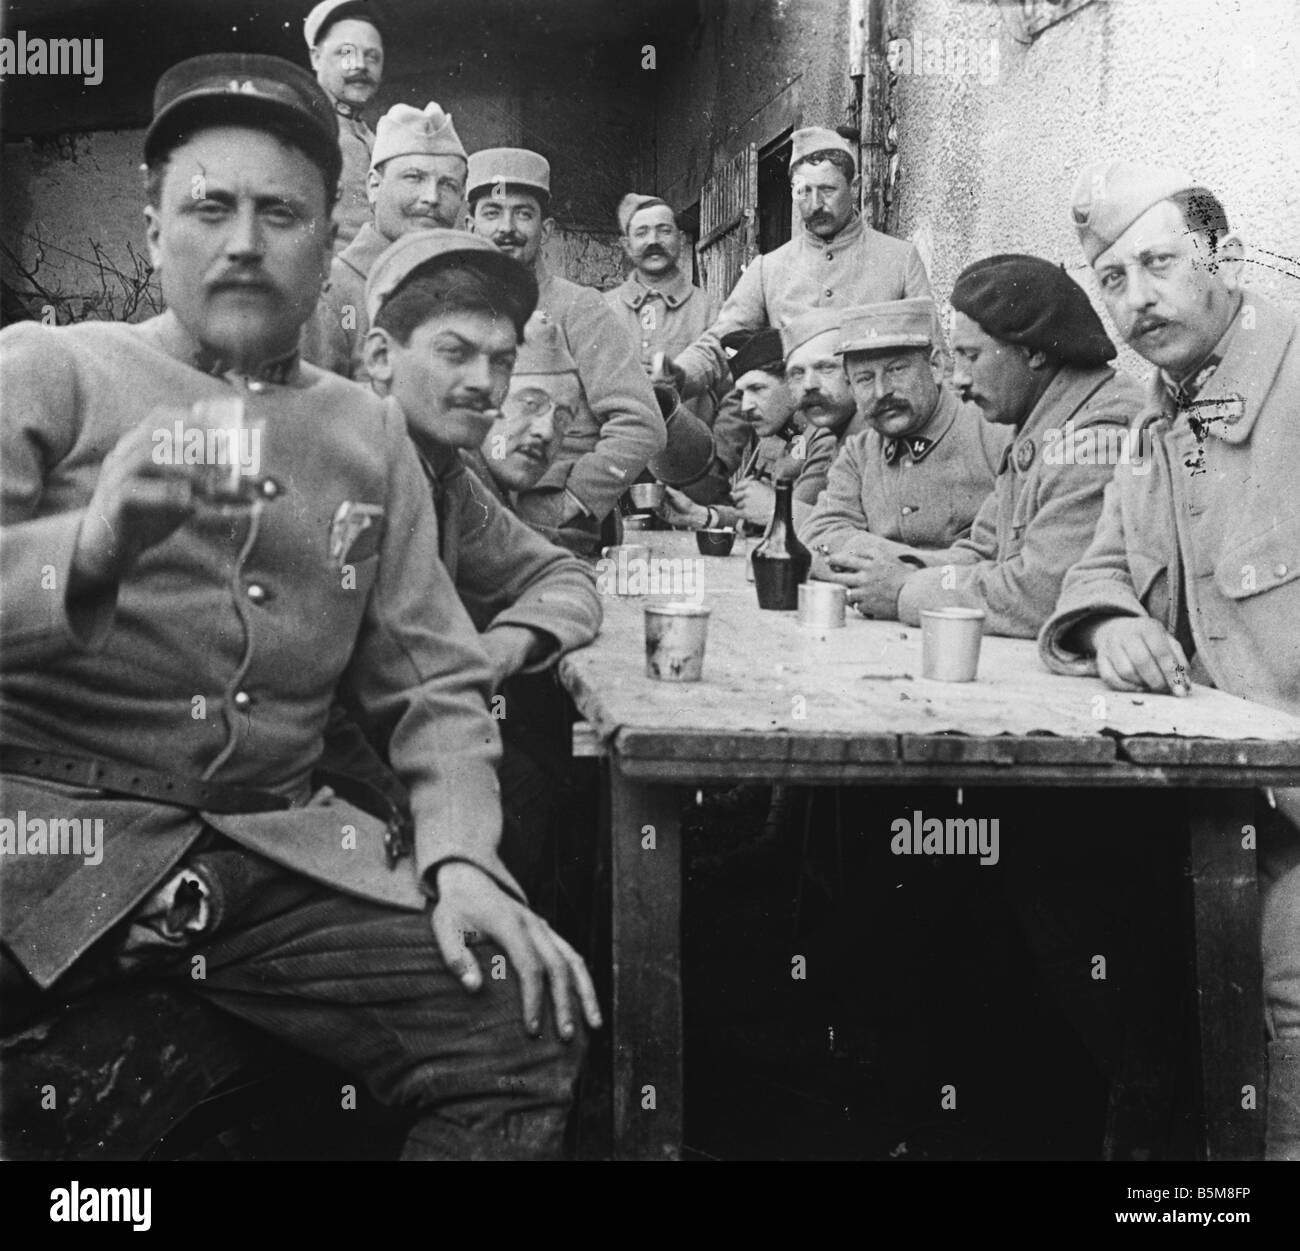 2 G55 F1 1917 20 E WW1 soldados franceses oficiales foto historia Primera Guerra Mundial Francia soldados y oficiales del ejército francés Phot Foto de stock